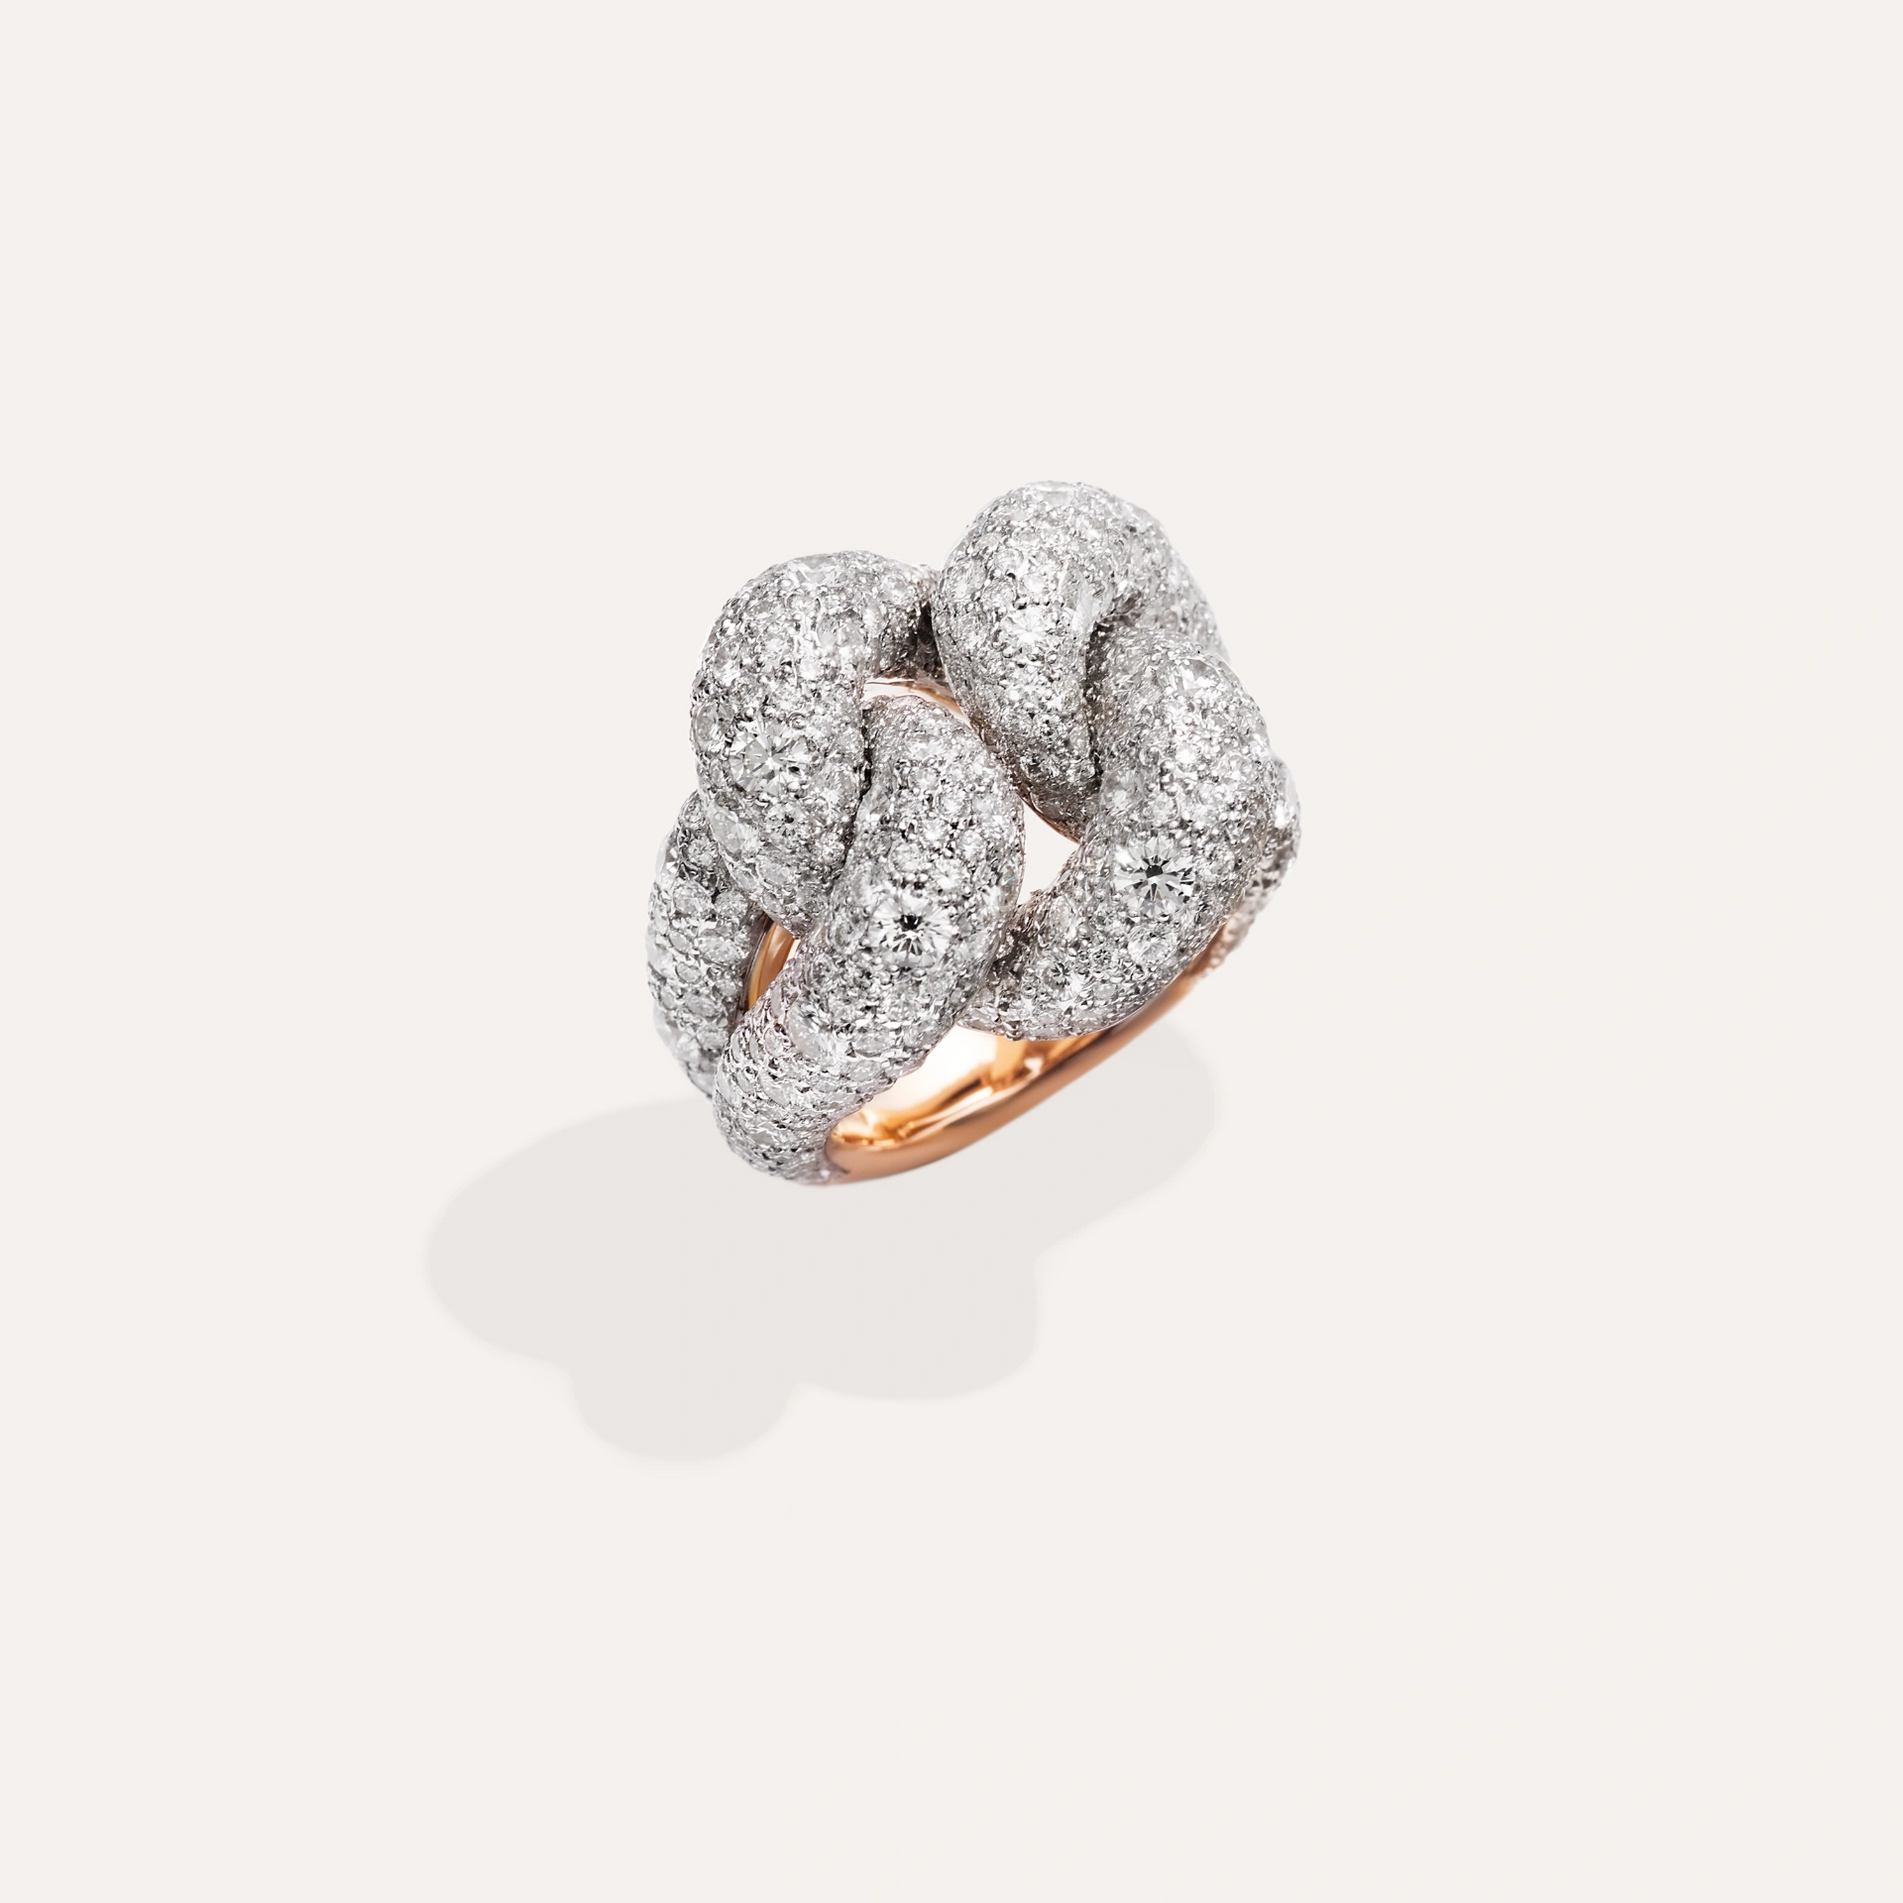 Pomellato Catene Ring in 18k Gold and Silver with White Diamonds - Orsini Jewellers